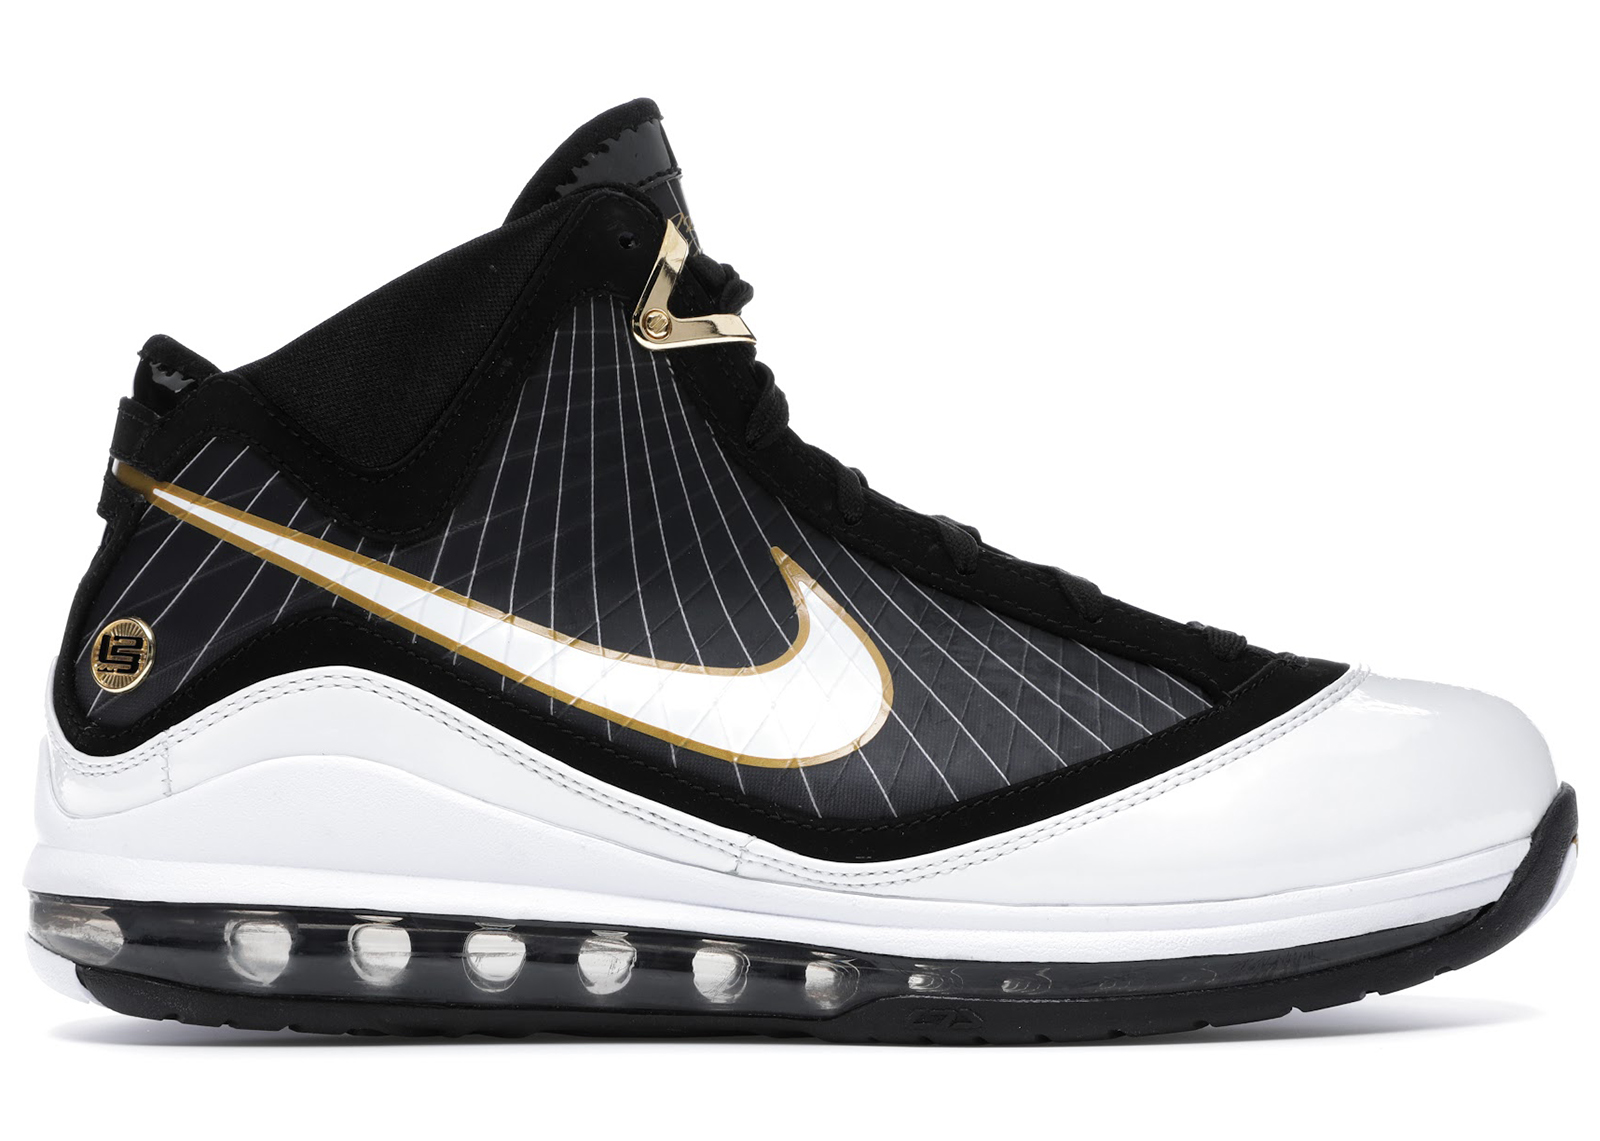 Nike LeBron 7 Black/White-Metallic Gold 